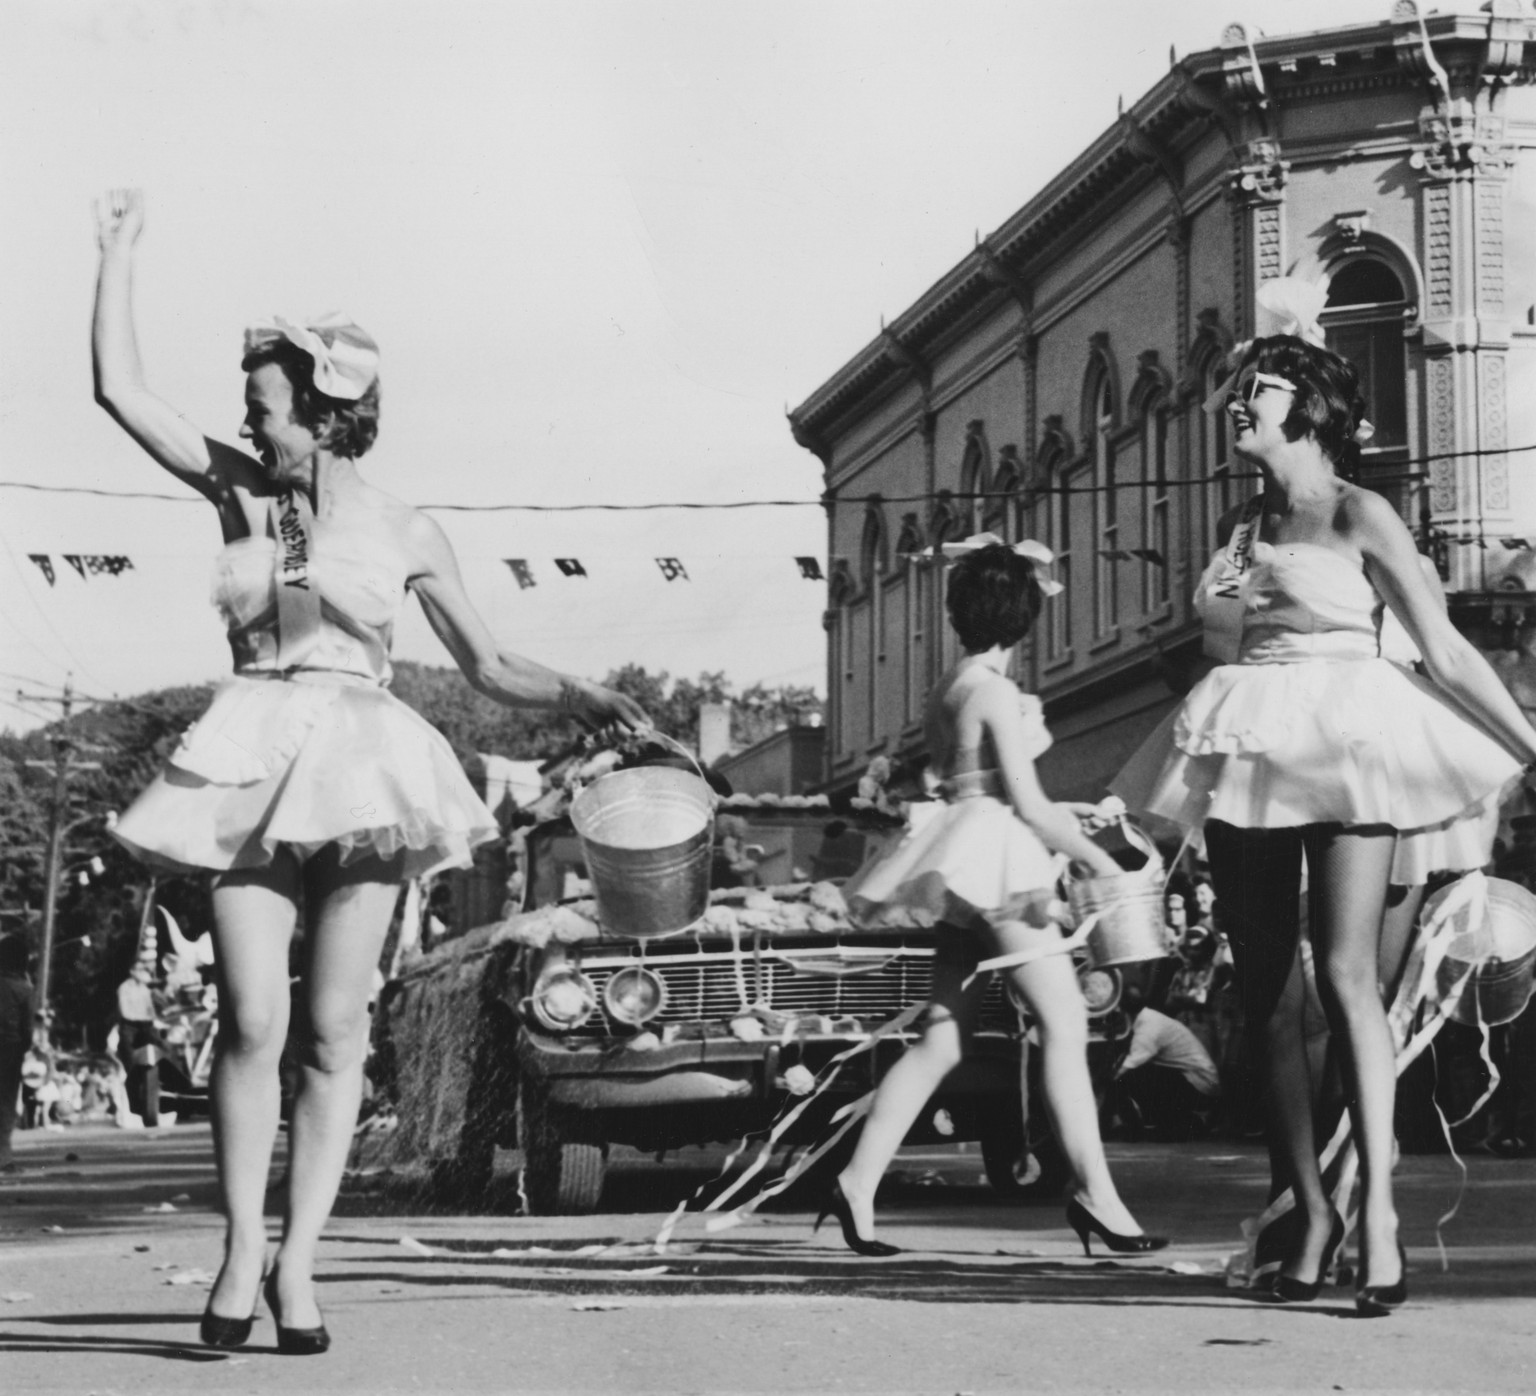 Der Palace of the Governors in Santa Fe rechts im Bild ist das älteste Gebäude der USA. Das Foto zeigt eine Parade bei den Fiestas de Santa Fe in den 60ern.